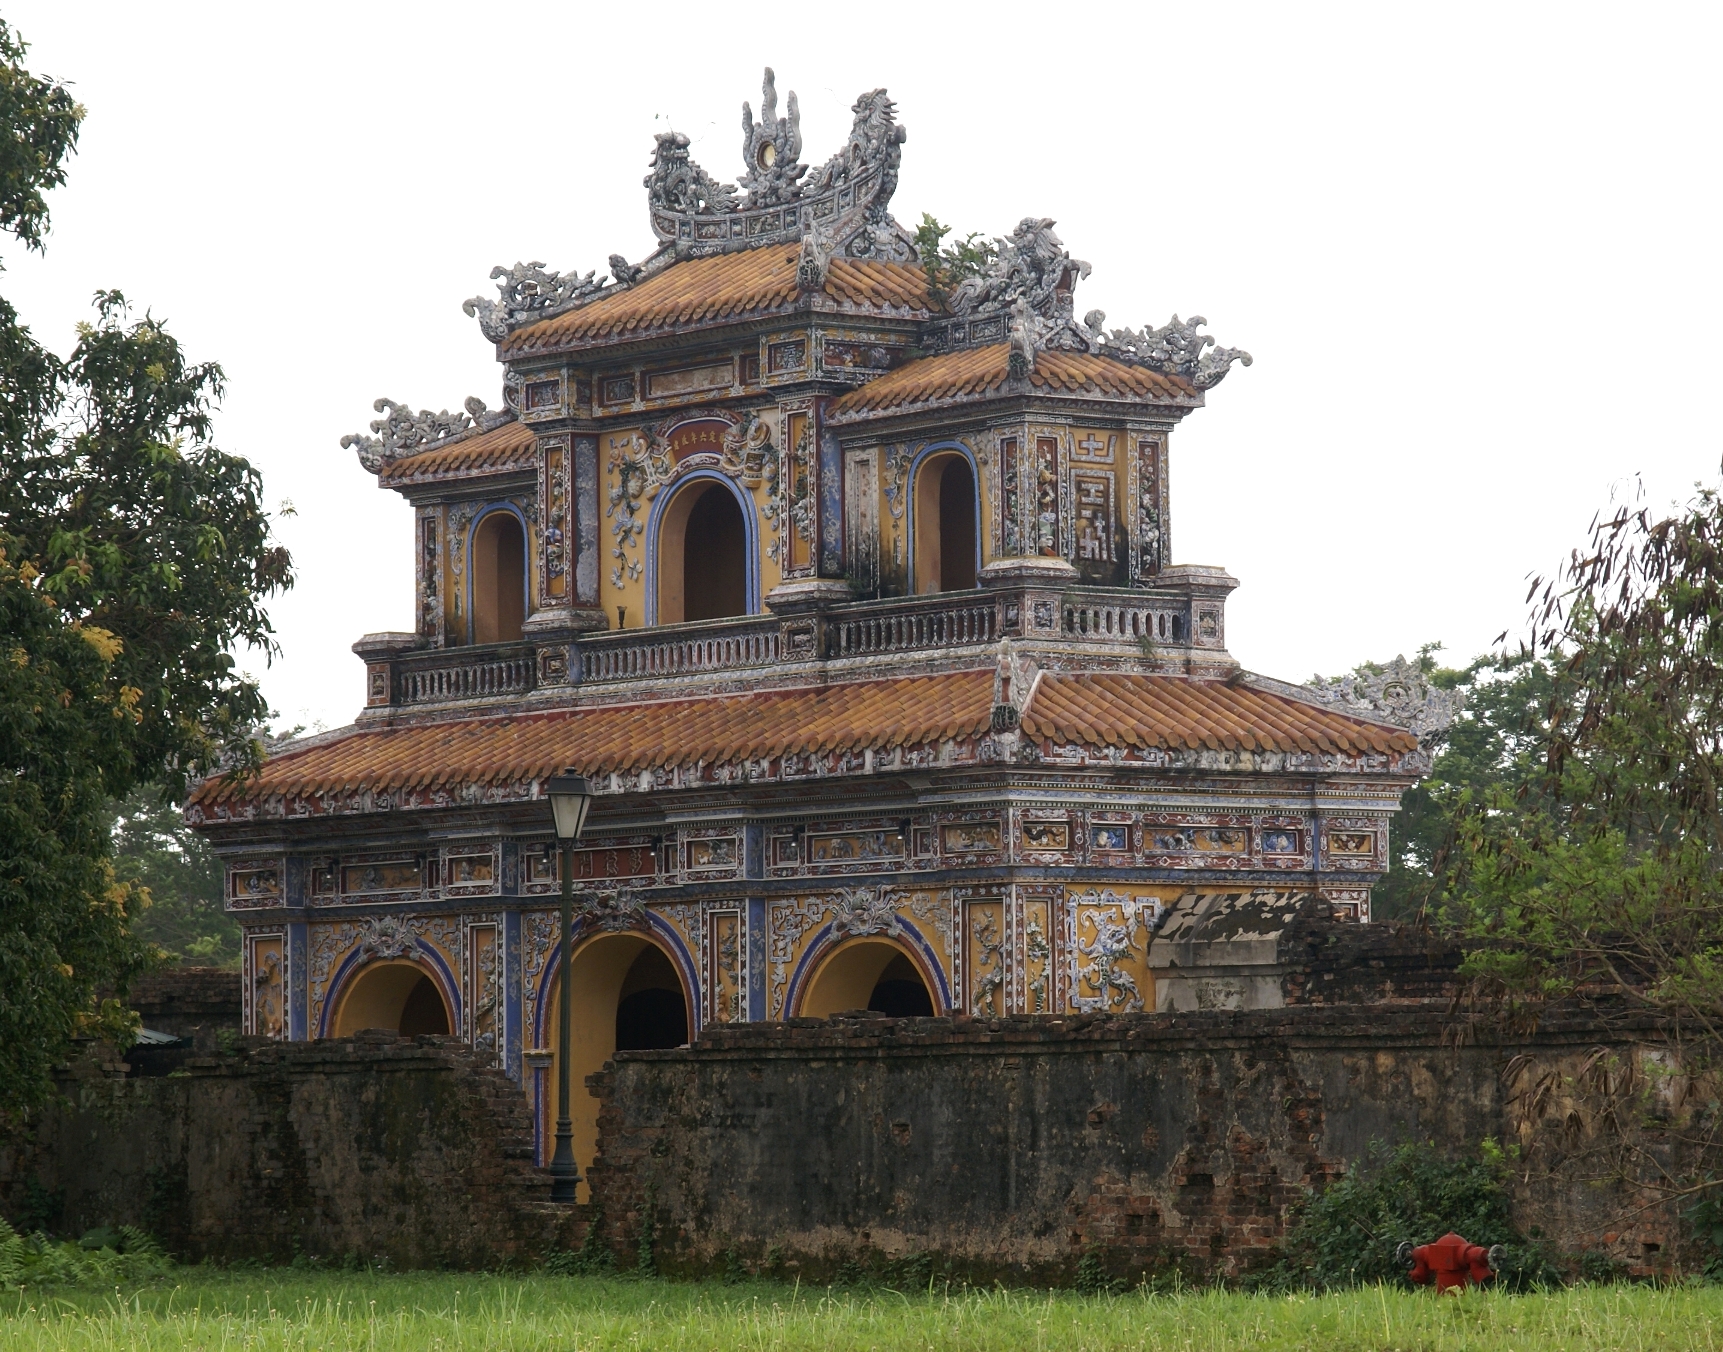 Ciudad imperial de Hue